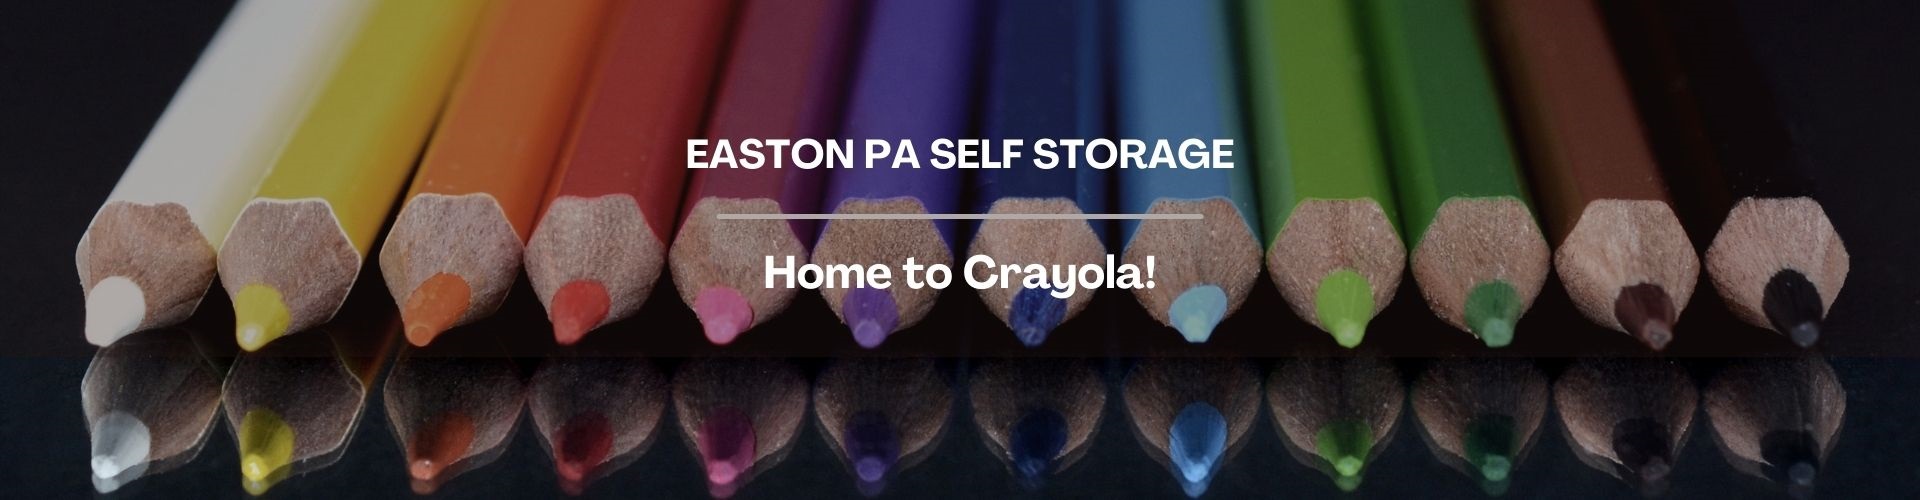 Easton PA Self Storage